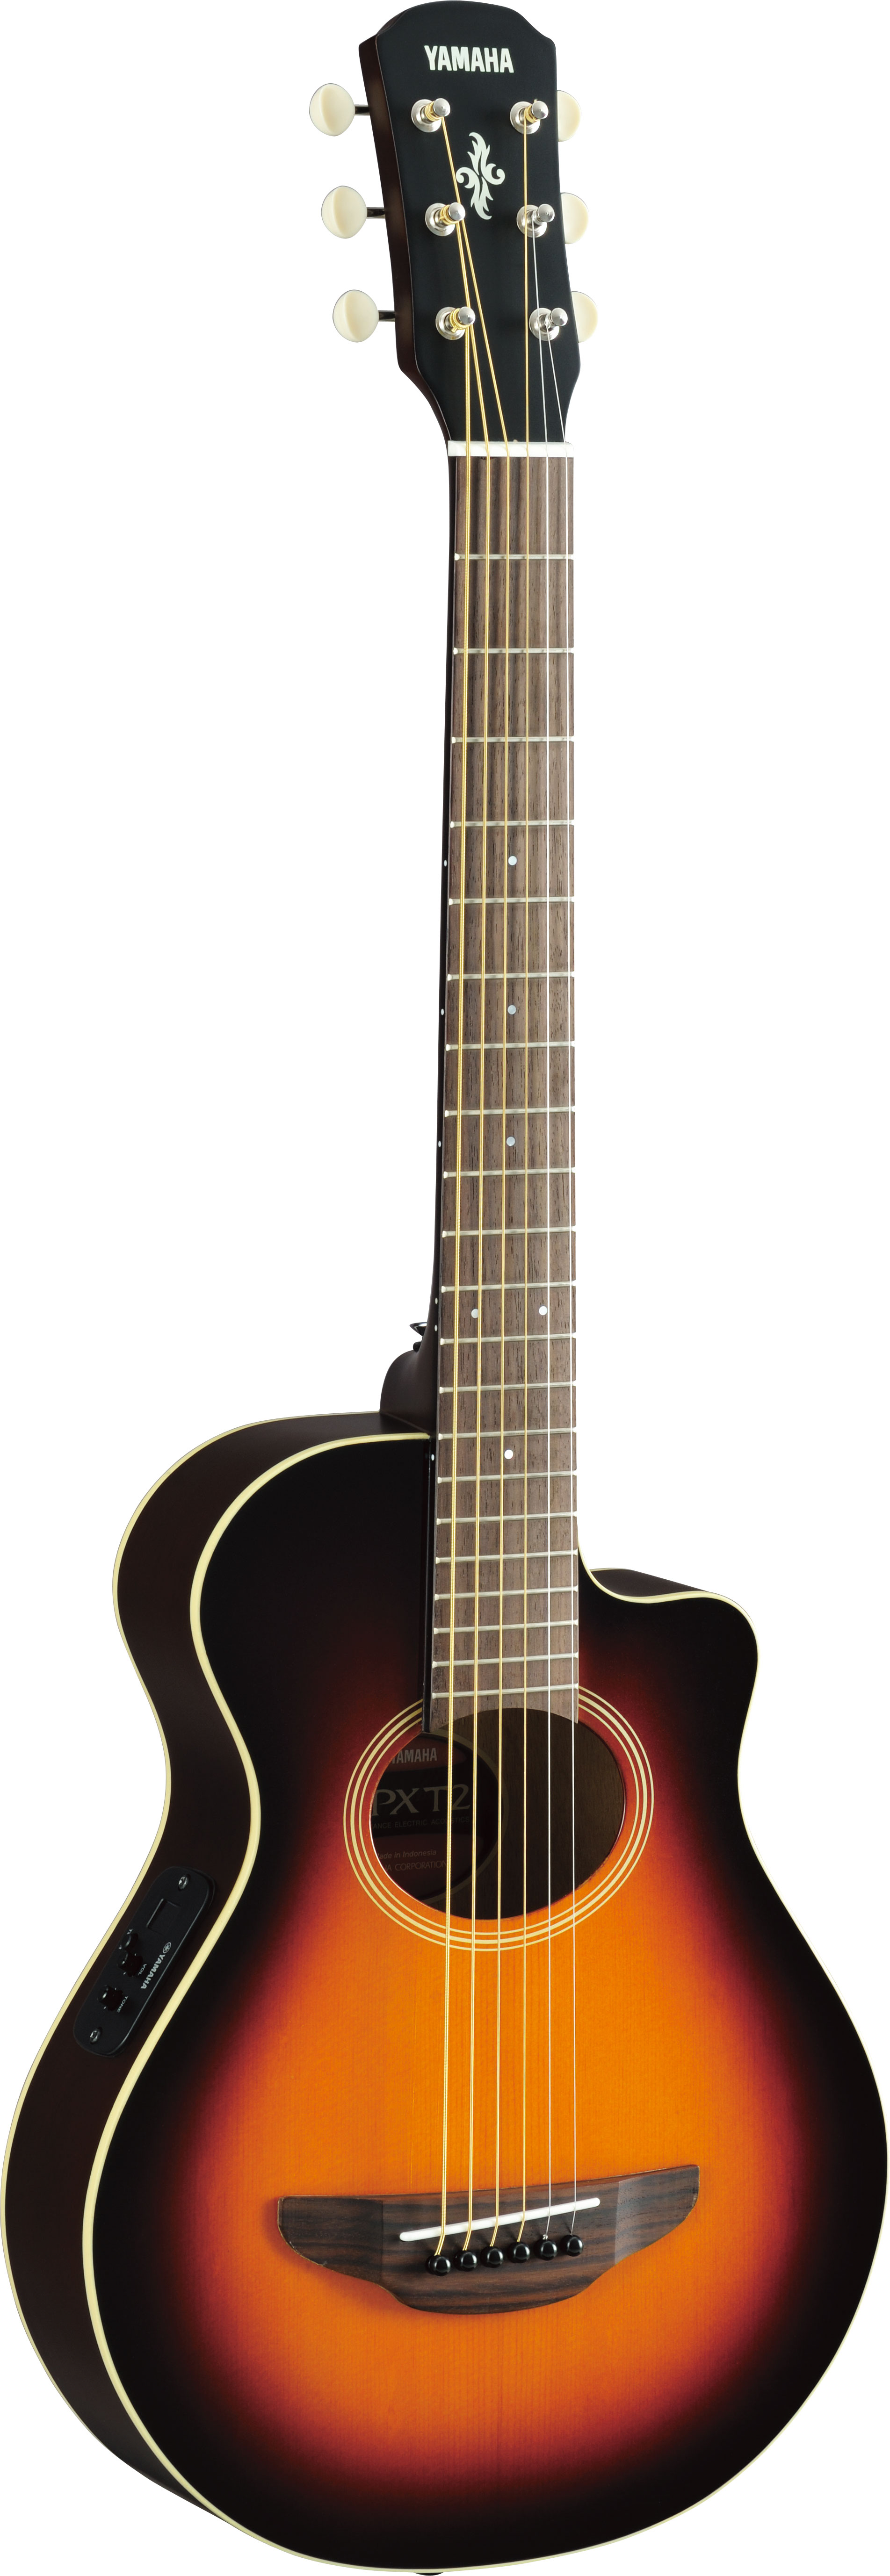 APX T2 Travelling Gitarre OVS inkl. Gig Bag